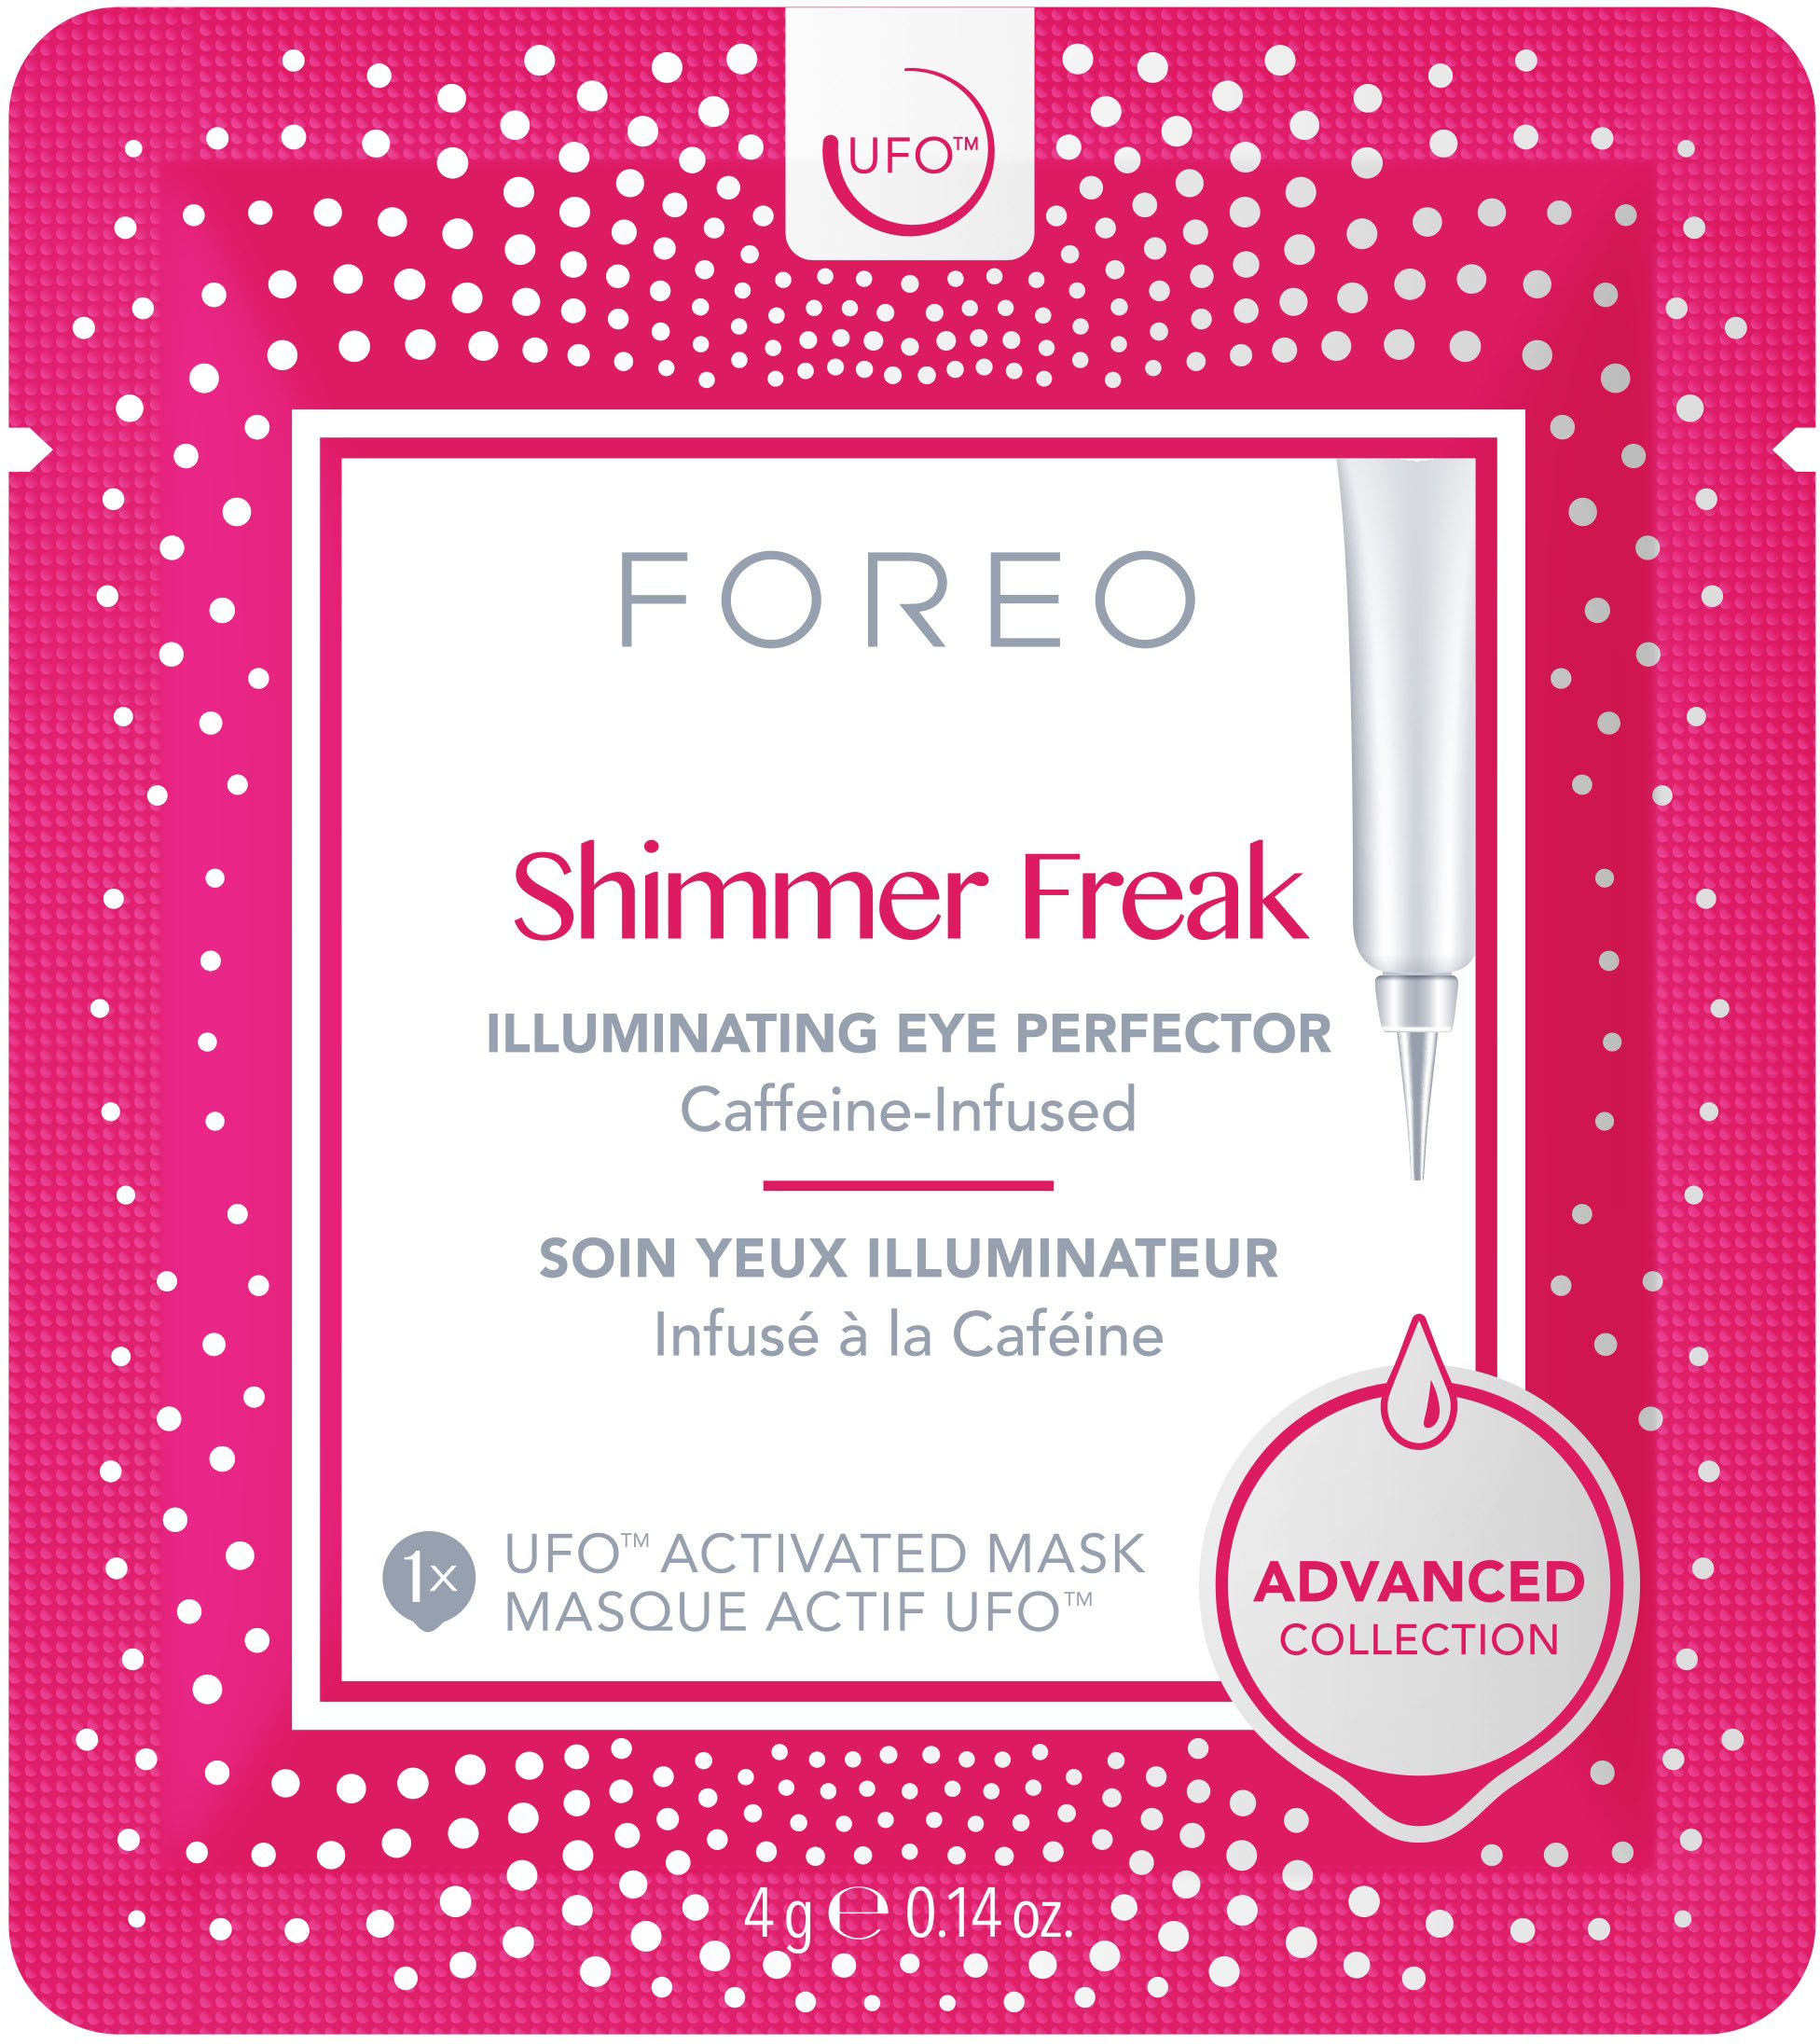 

FOREO - UFO Masks Shimmer Freak x 6 - White